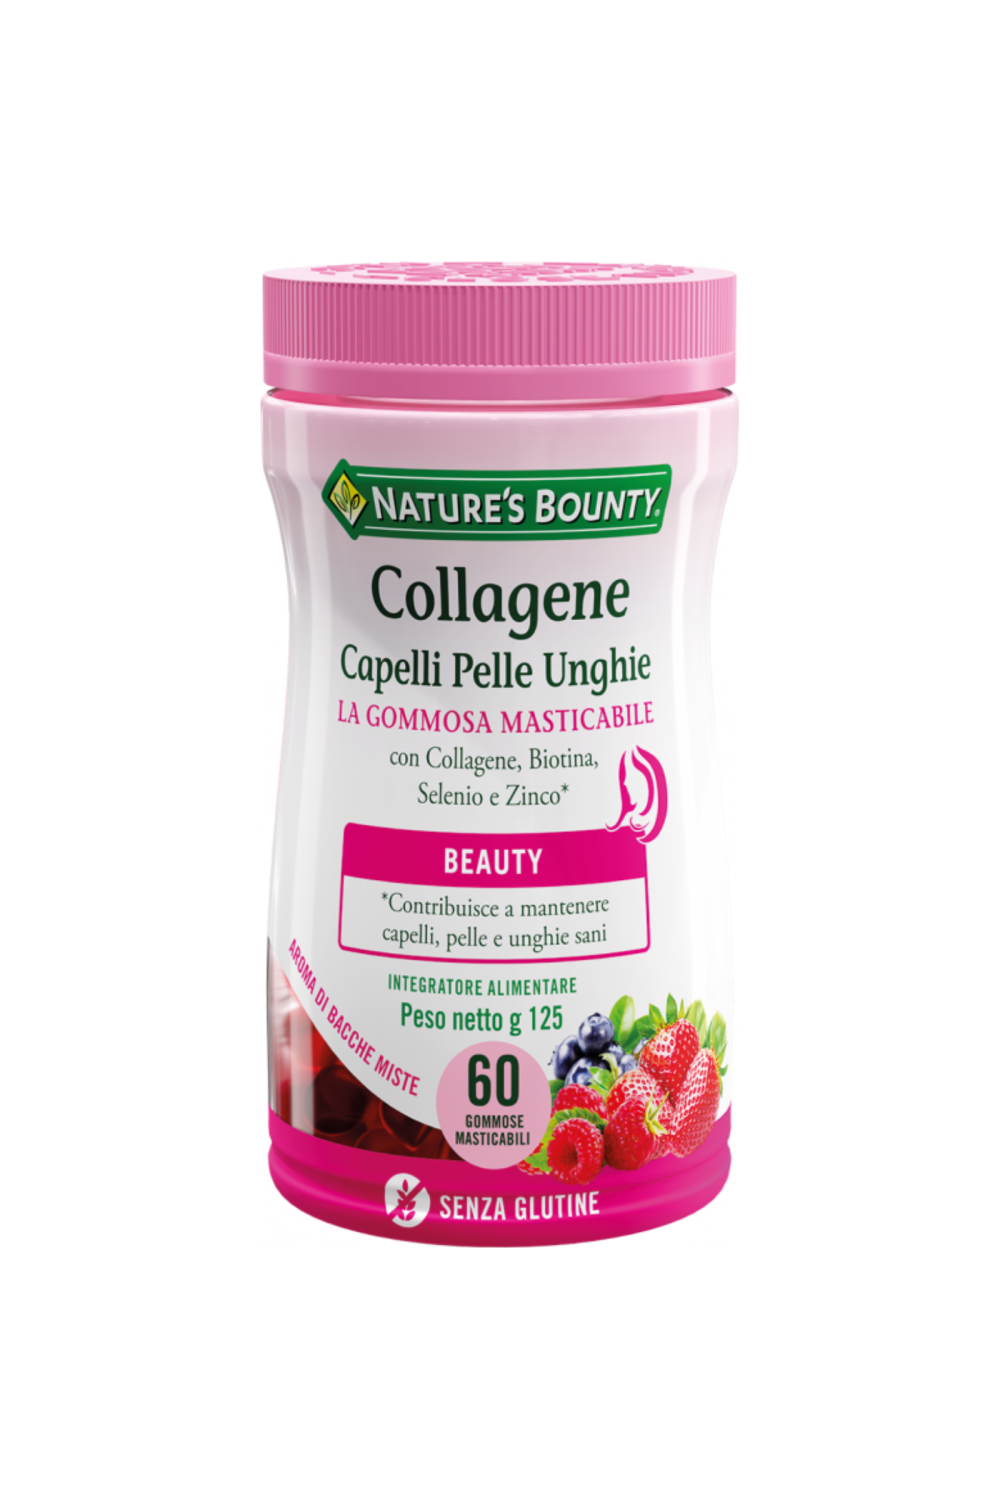 Nature's Bounty Collagene Capelli Pelle Unghie con Collagene, Vitamine e Minerali 60 gommose